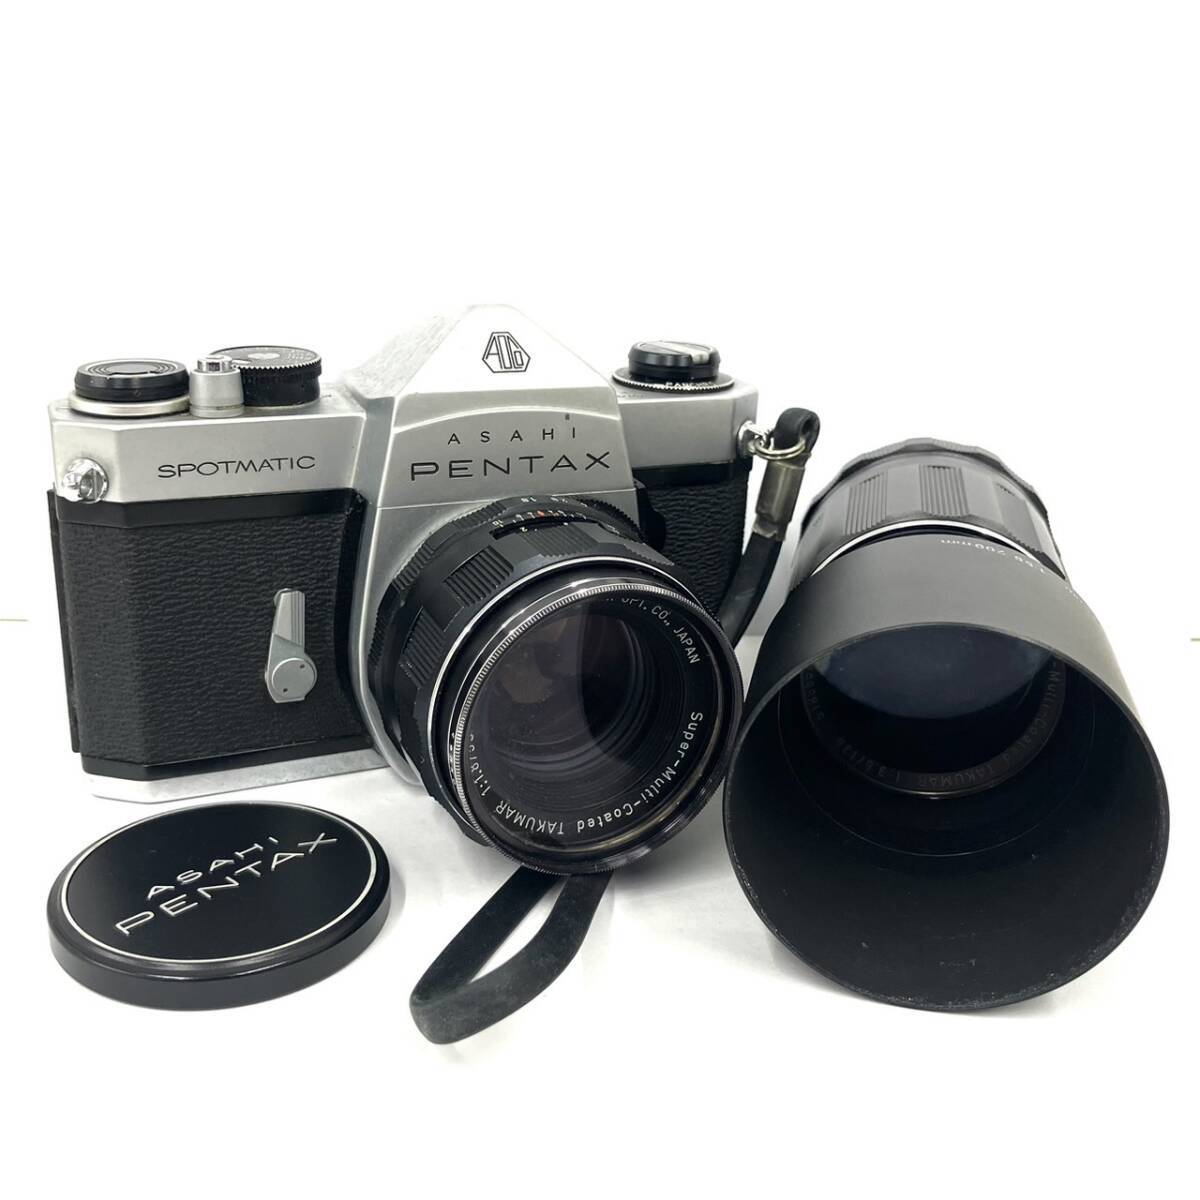 【K】PENTAX　 Pentax 　 камера 　TAKUMAR　 оптика  　 на работоспособность не проверялось 　  подробности  неизвестный 　 пленка  камера 　SPOTMATIC　SP　 продаю как нерабочий  【1674】A